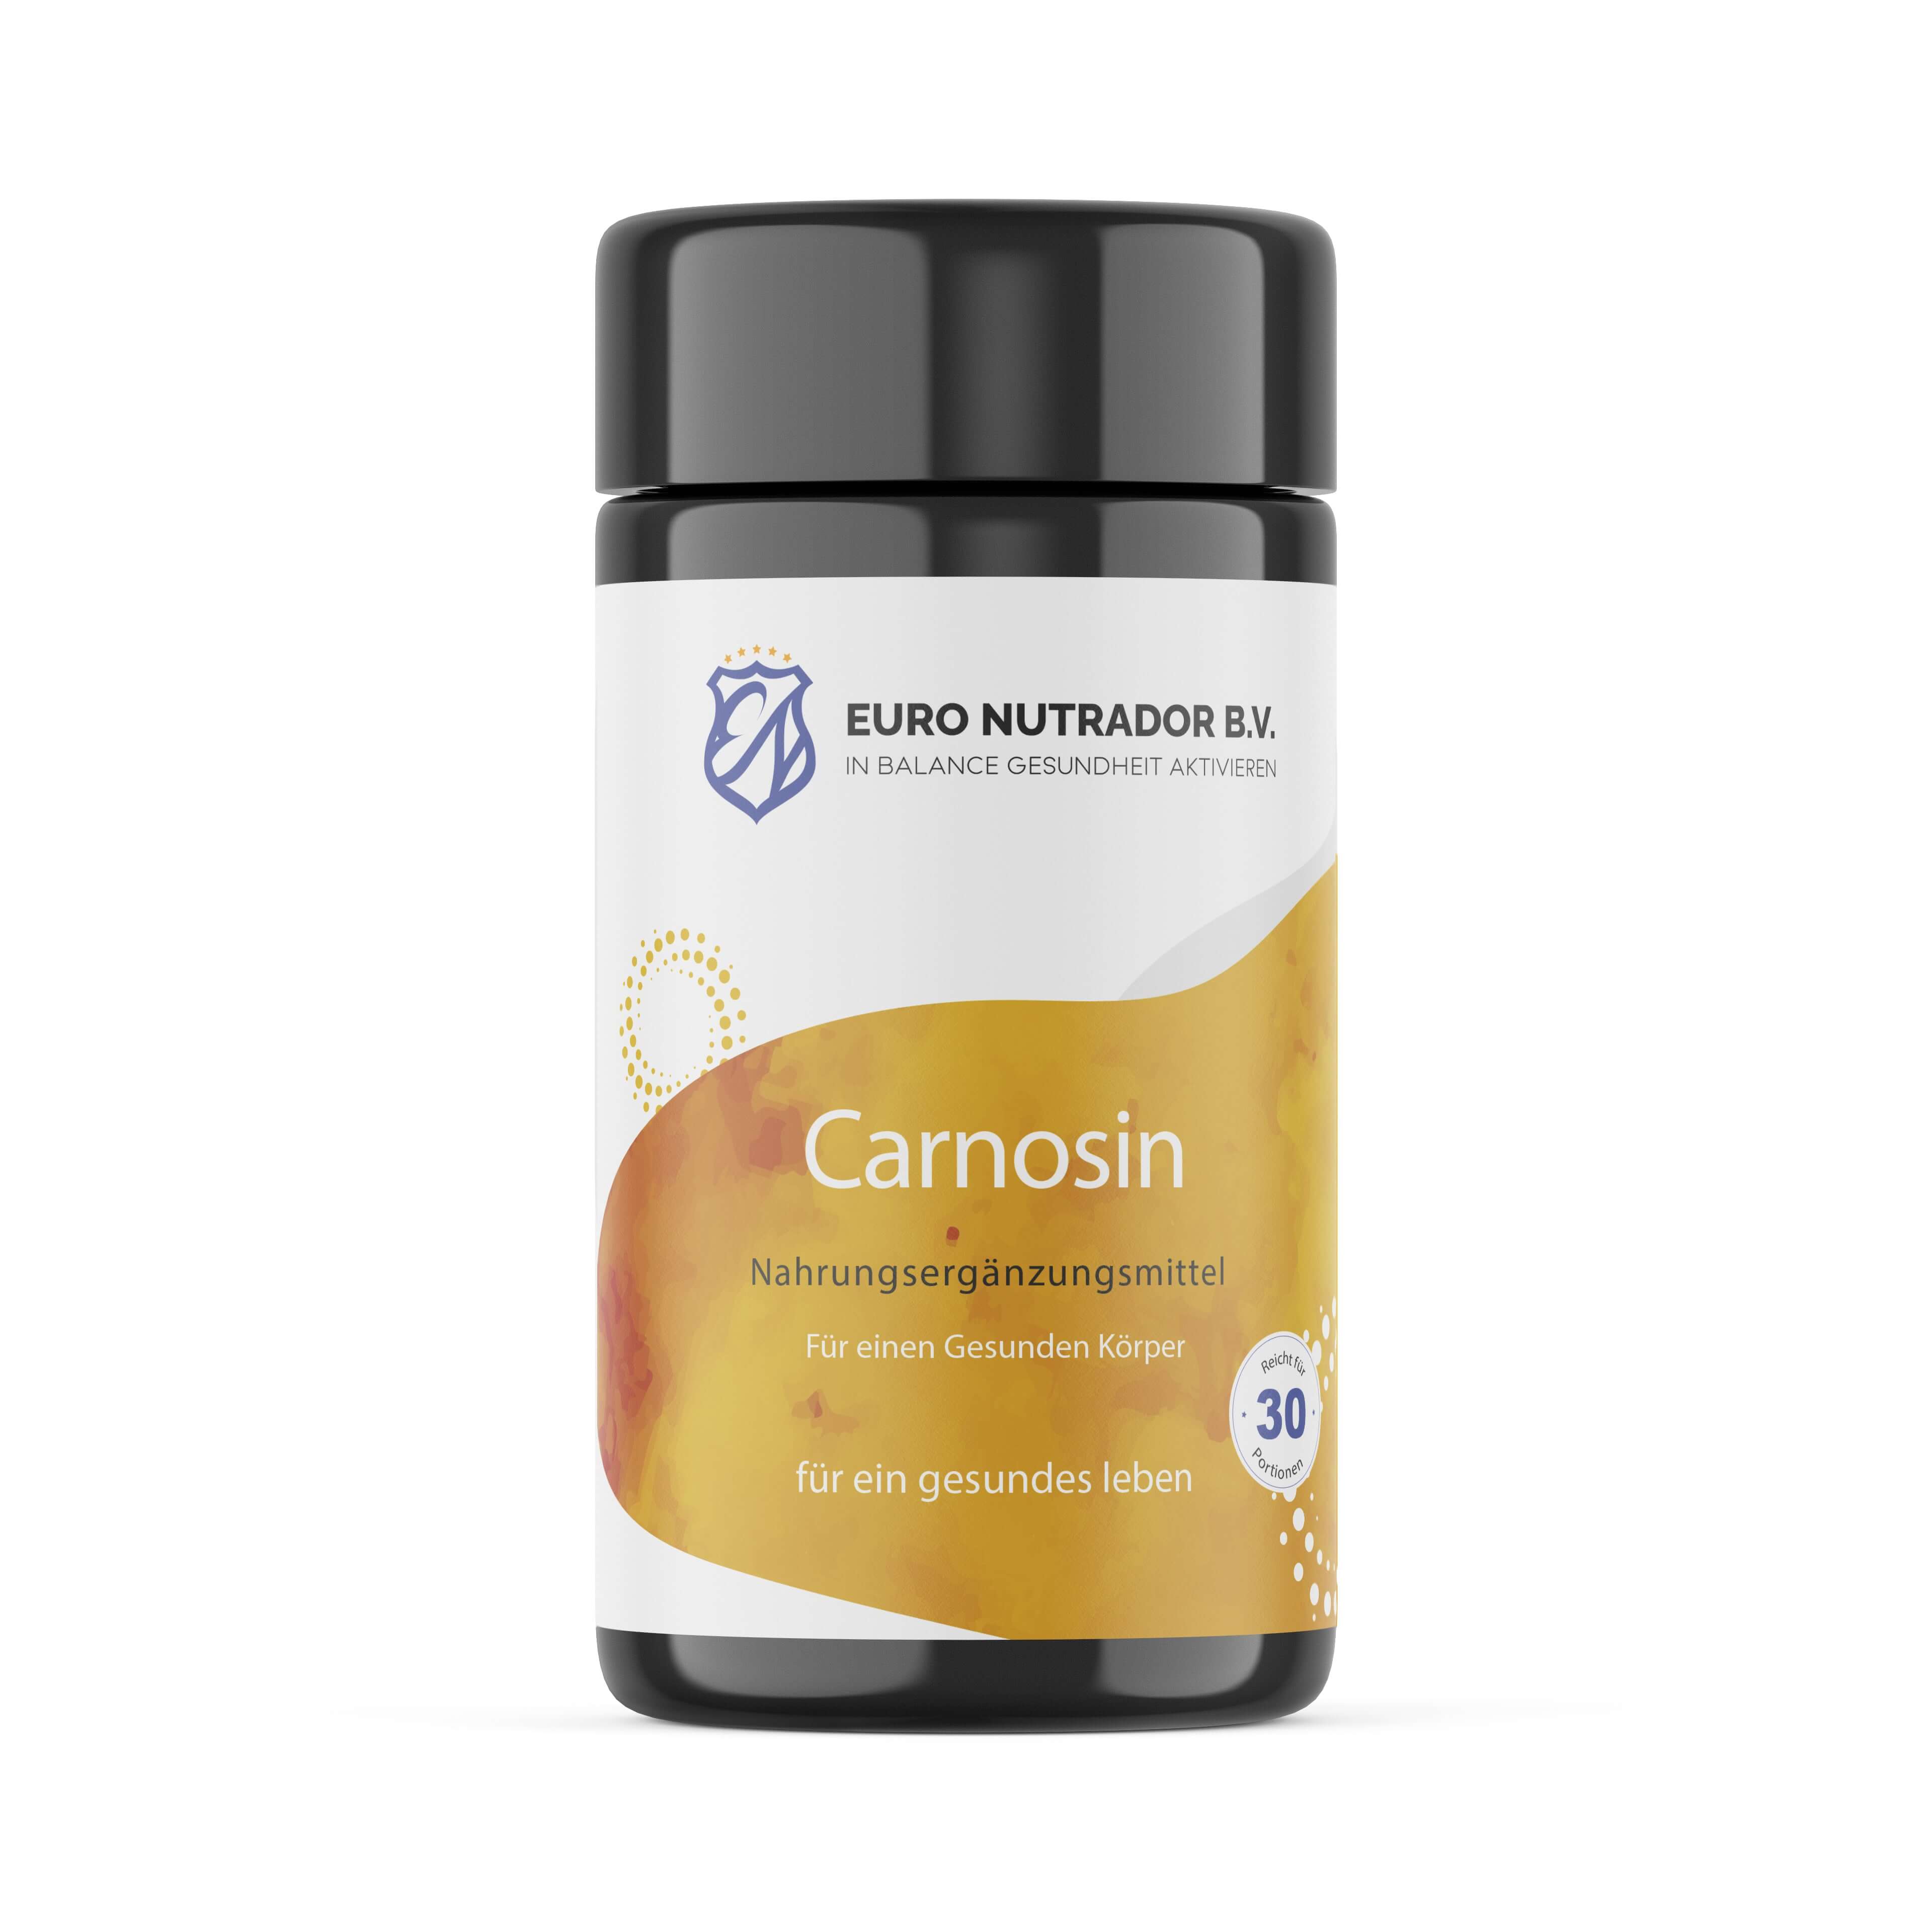 Carnosin - natürliches Nahrungsergänzungsmittel zur Unterstützung der Zellgesundheit und Verlangsamung des Alterungsprozesses